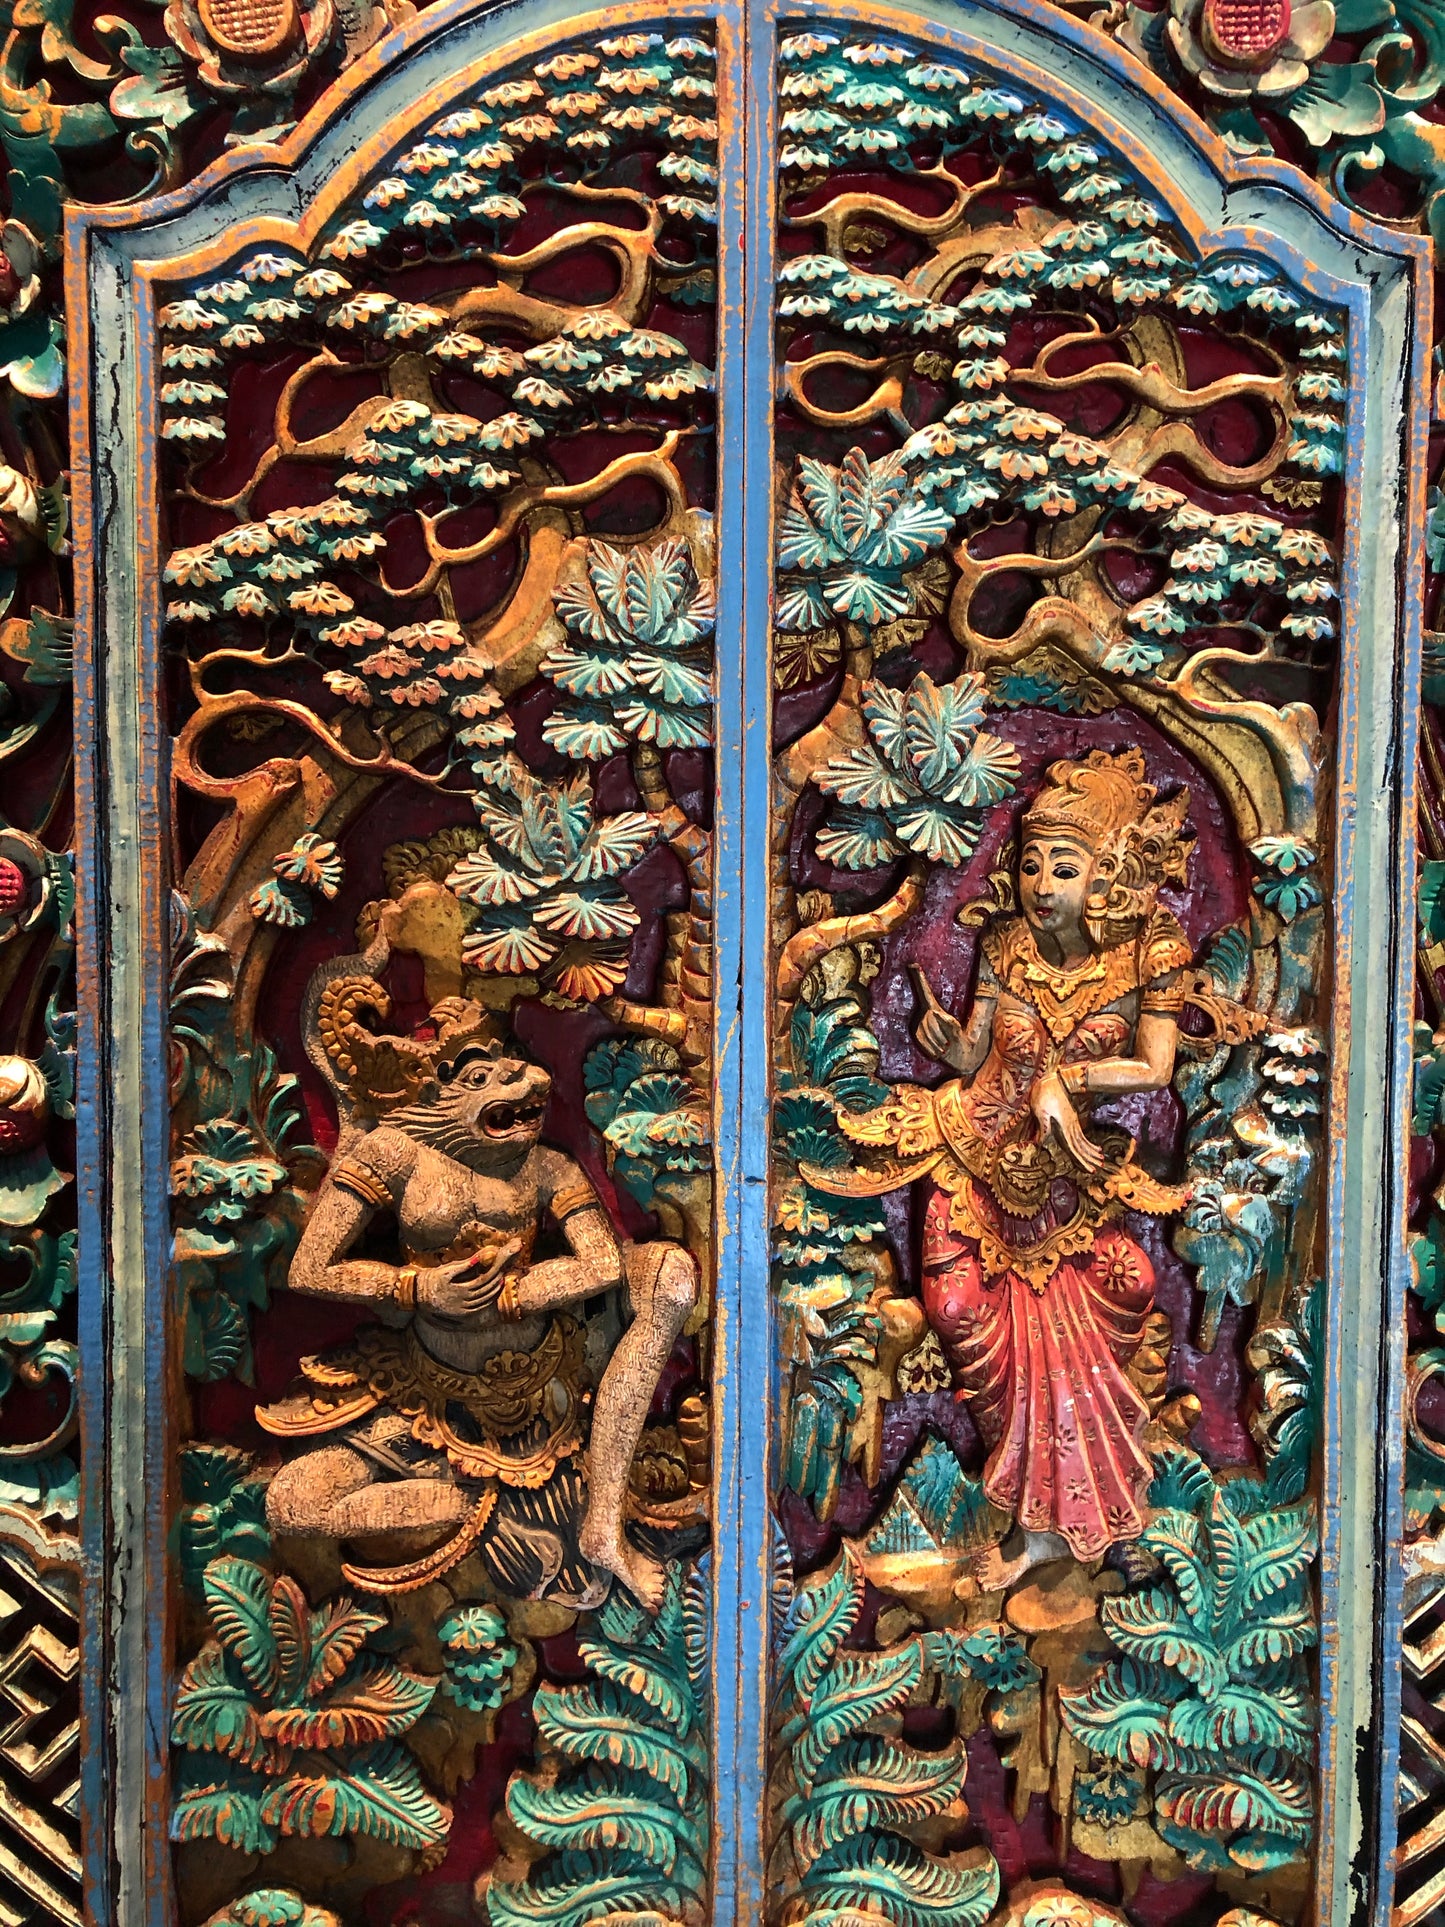 Bali Door with Red Lotus Flowers 25 3/4” x 691/4” Pantry Door